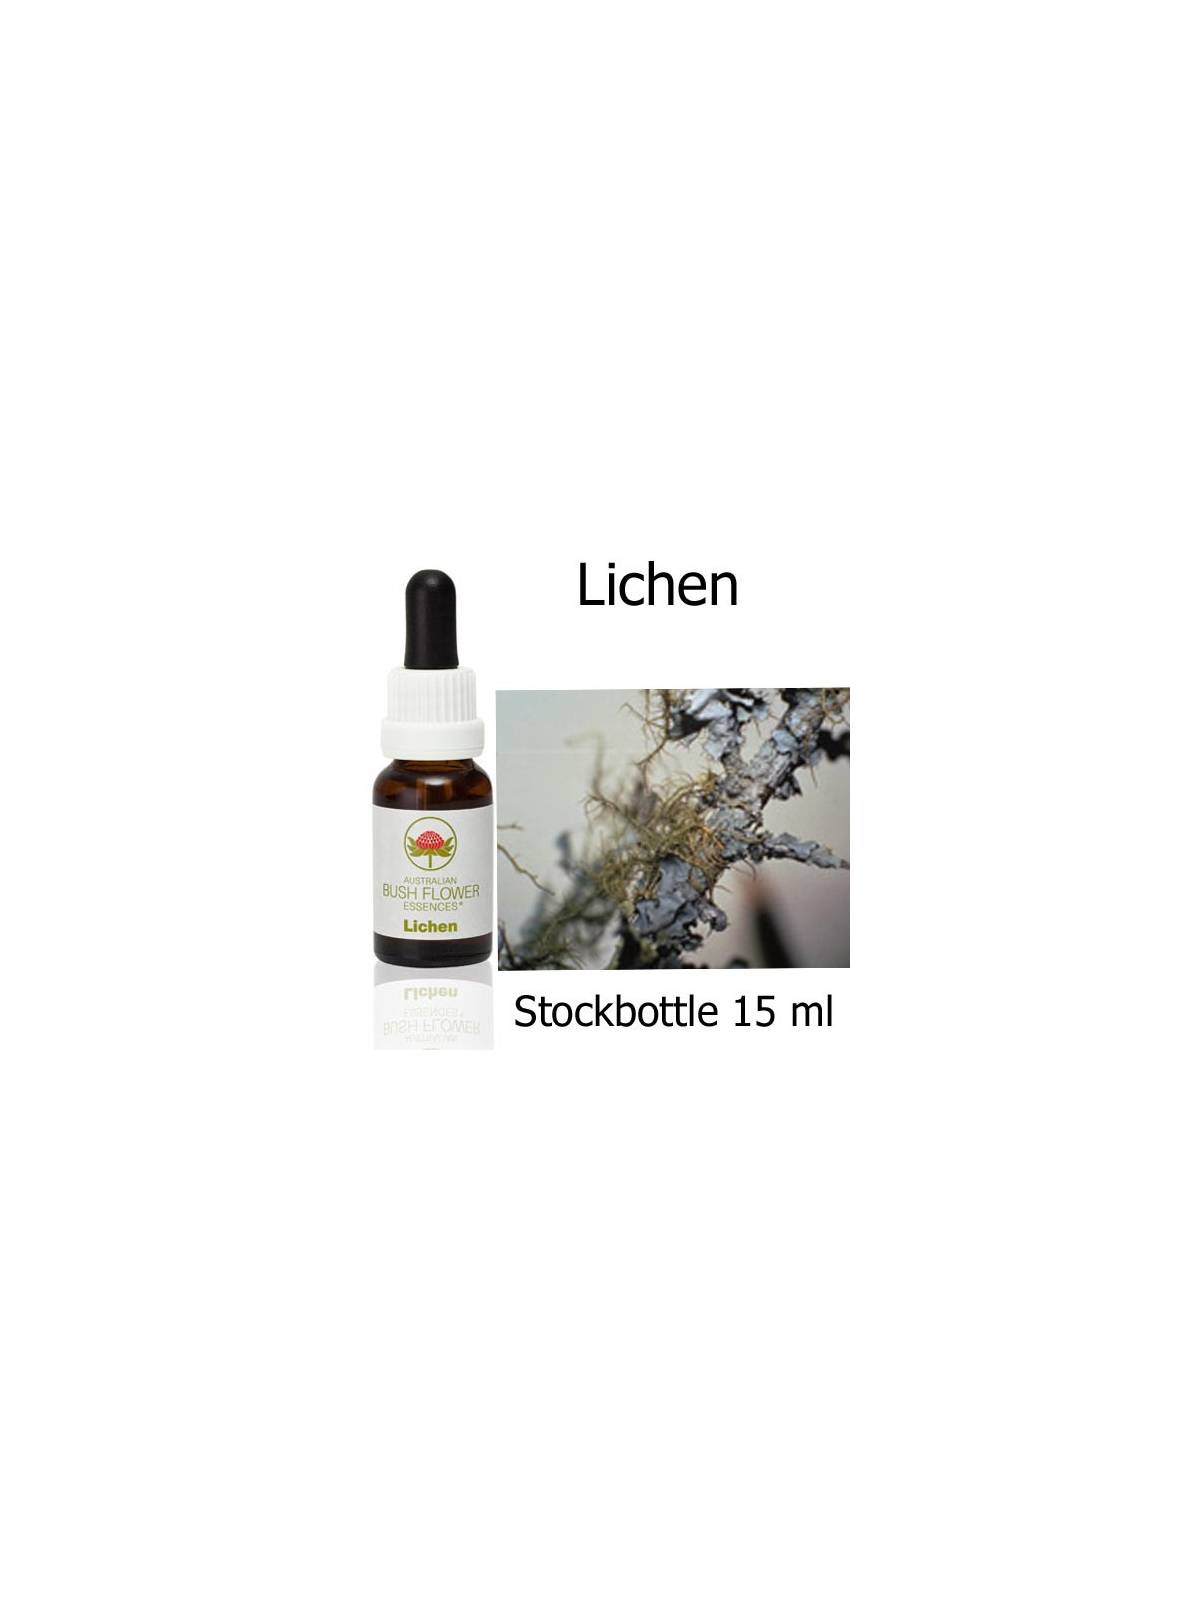 Lichen Australian Bush Flower Essences